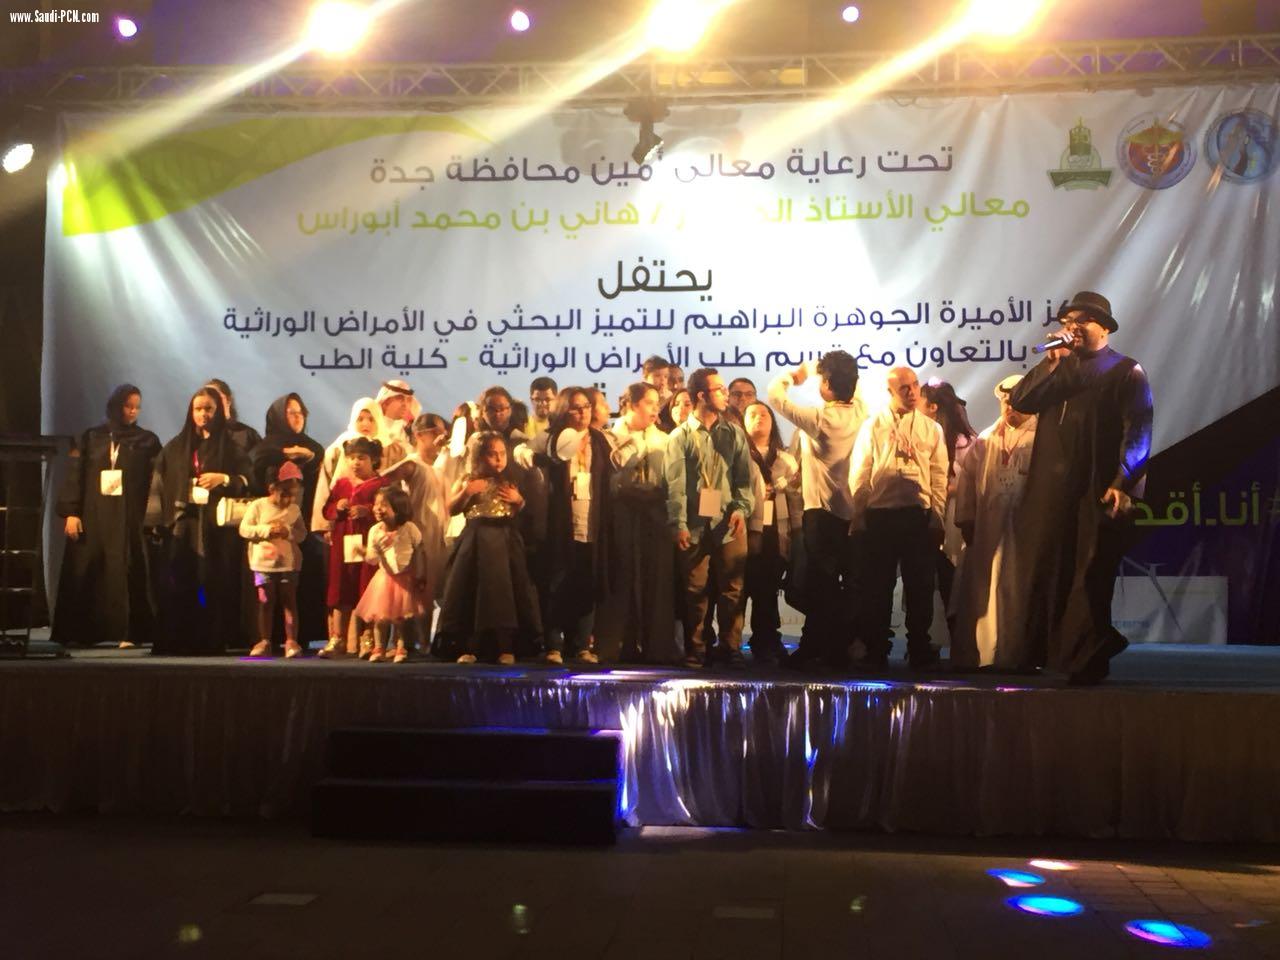 بحضور ٣٠٠ شخص و معالي أمين محافظة جدة: اطلاق اكبر برنامج توعوي ترفيهي تزامنا مع اليوم العالمي لمتلازمة داون